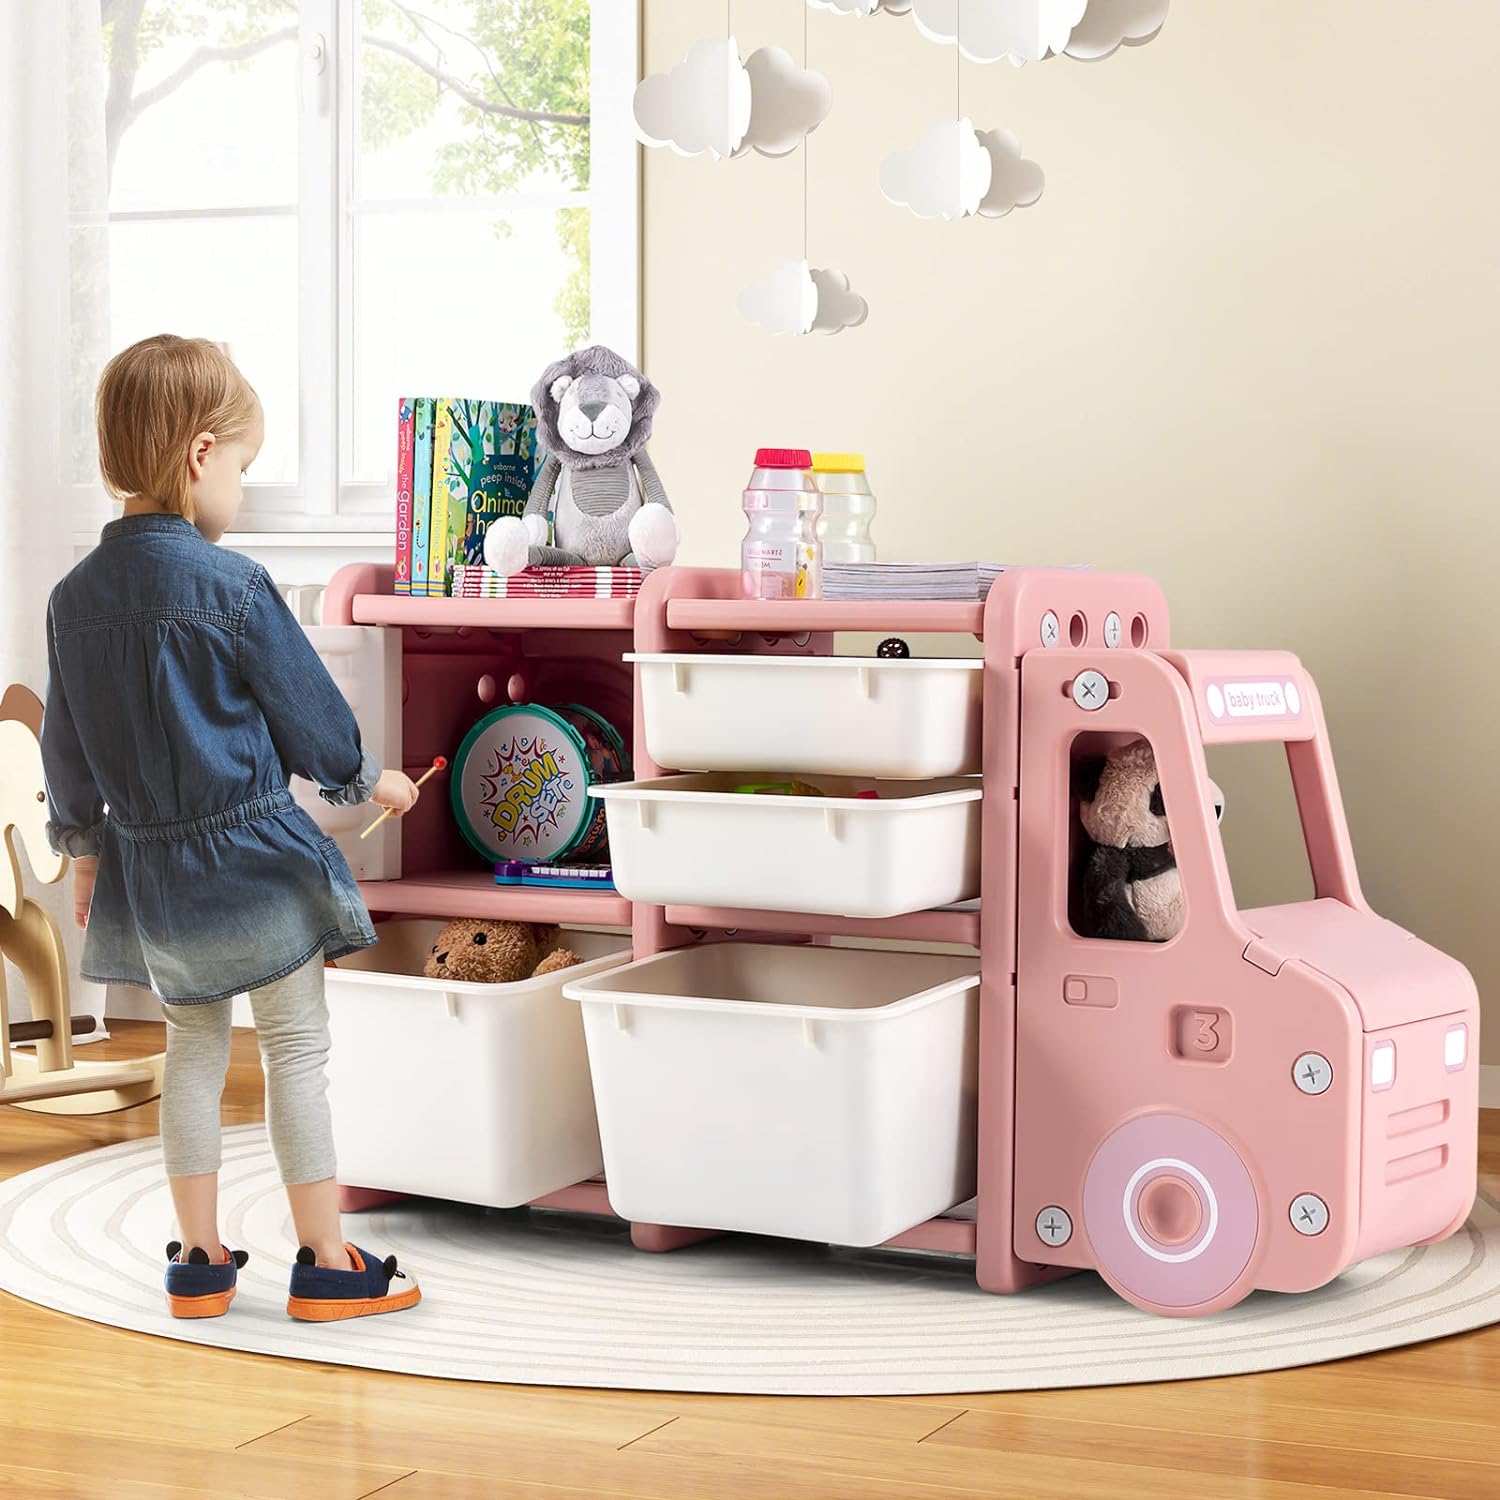 Organización y almacenamiento de juguetes en la habitación de los niños.